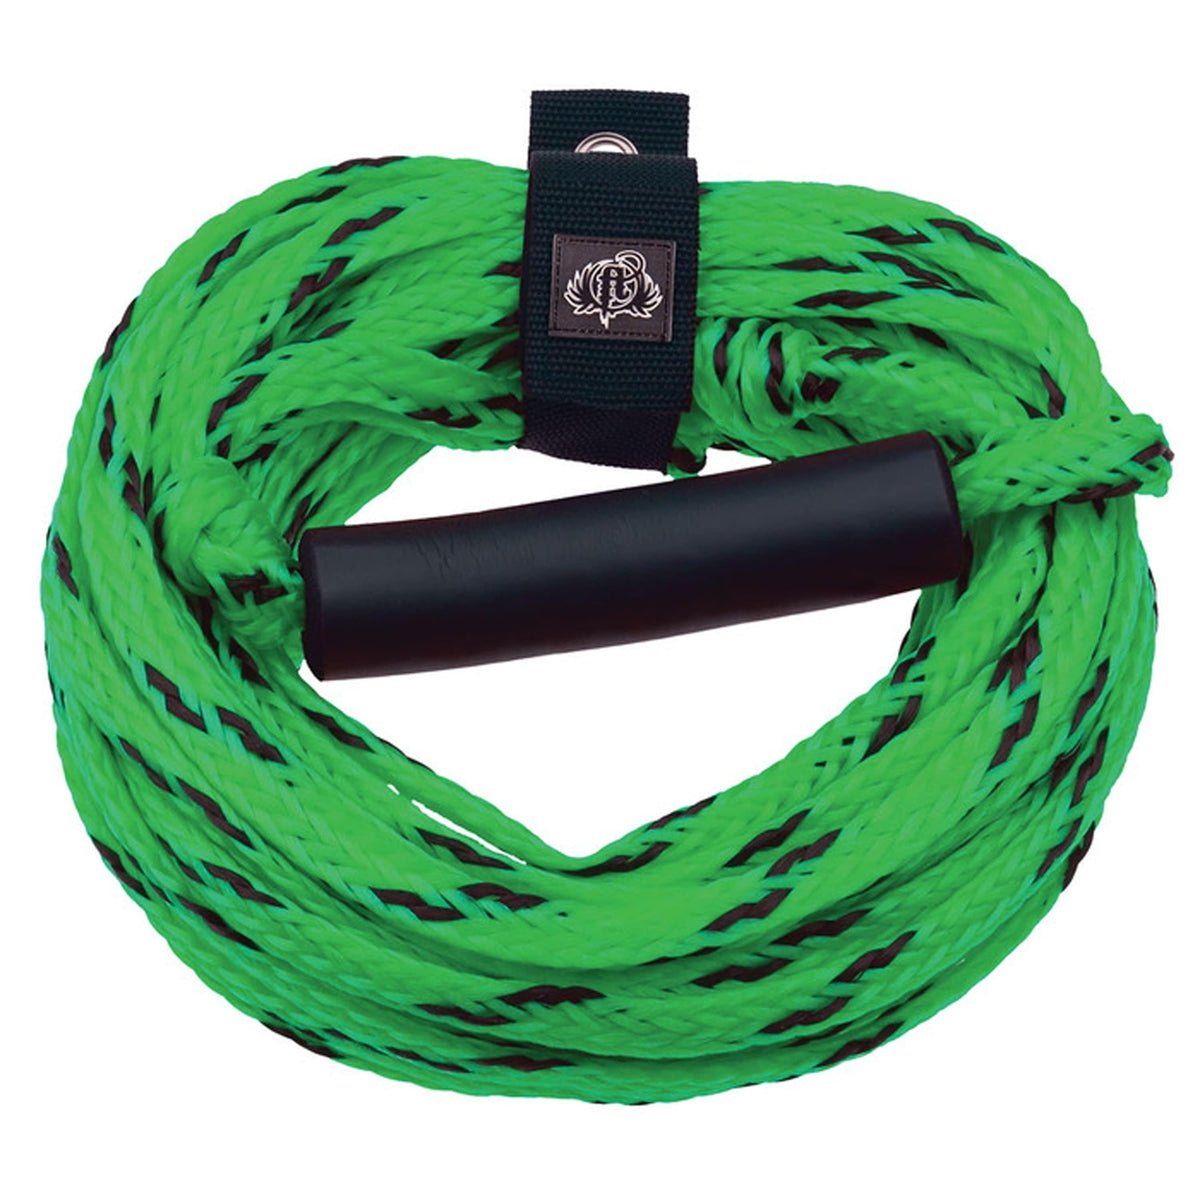 Full Throttle Tube Rope Green/Black 60' #340900-400-999-15